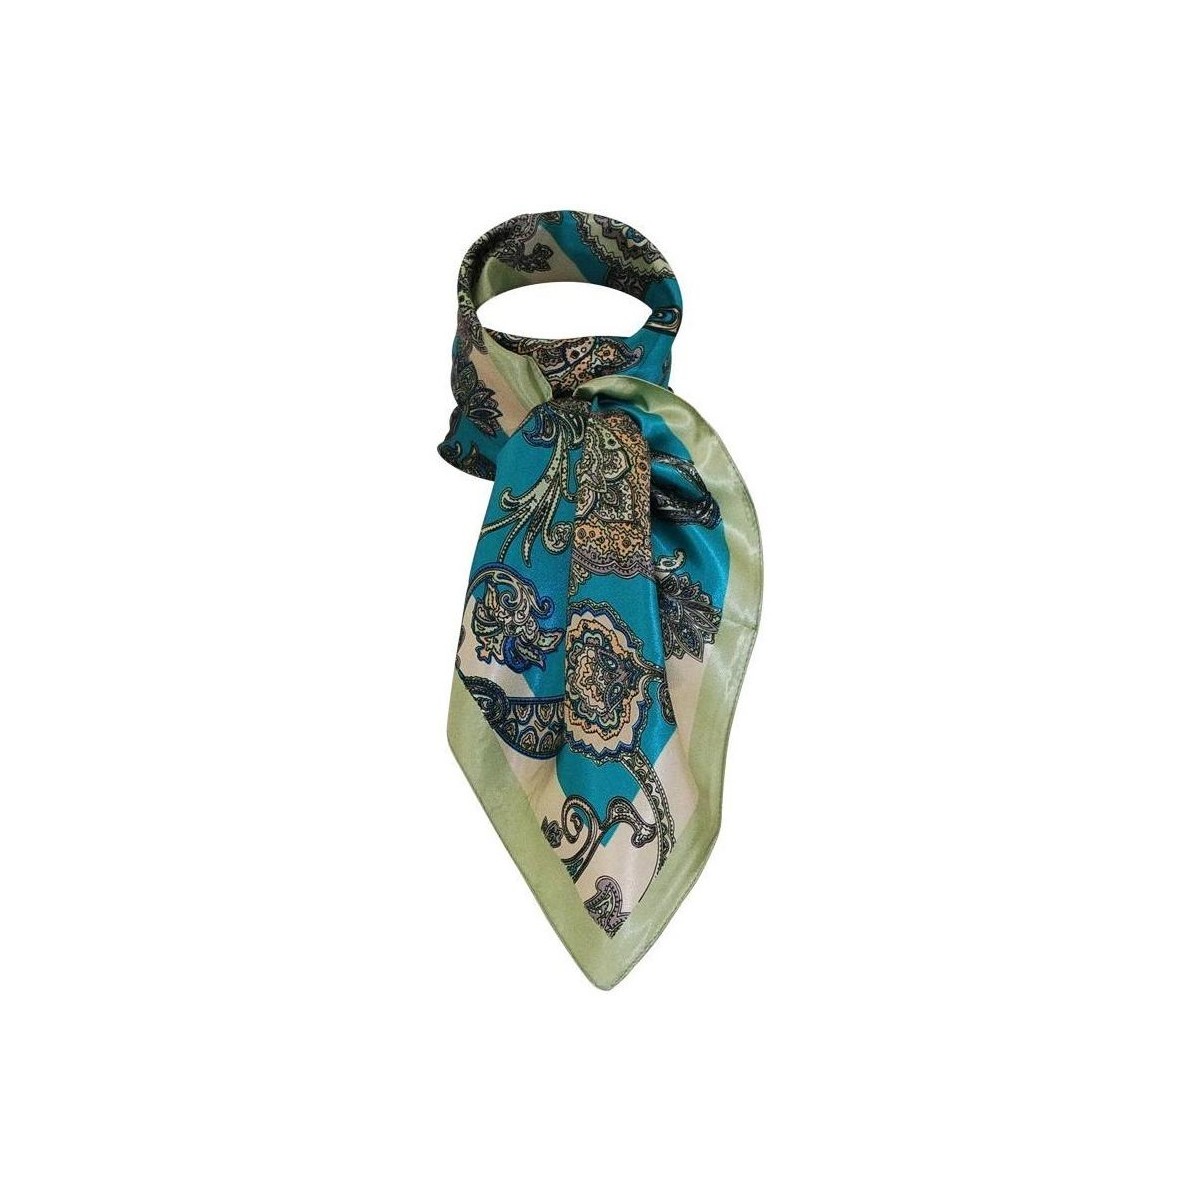 Accessoires textile Femme Echarpes / Etoles / Foulards Chapeau-Tendance Grand foulard polysatin cachemire Vert